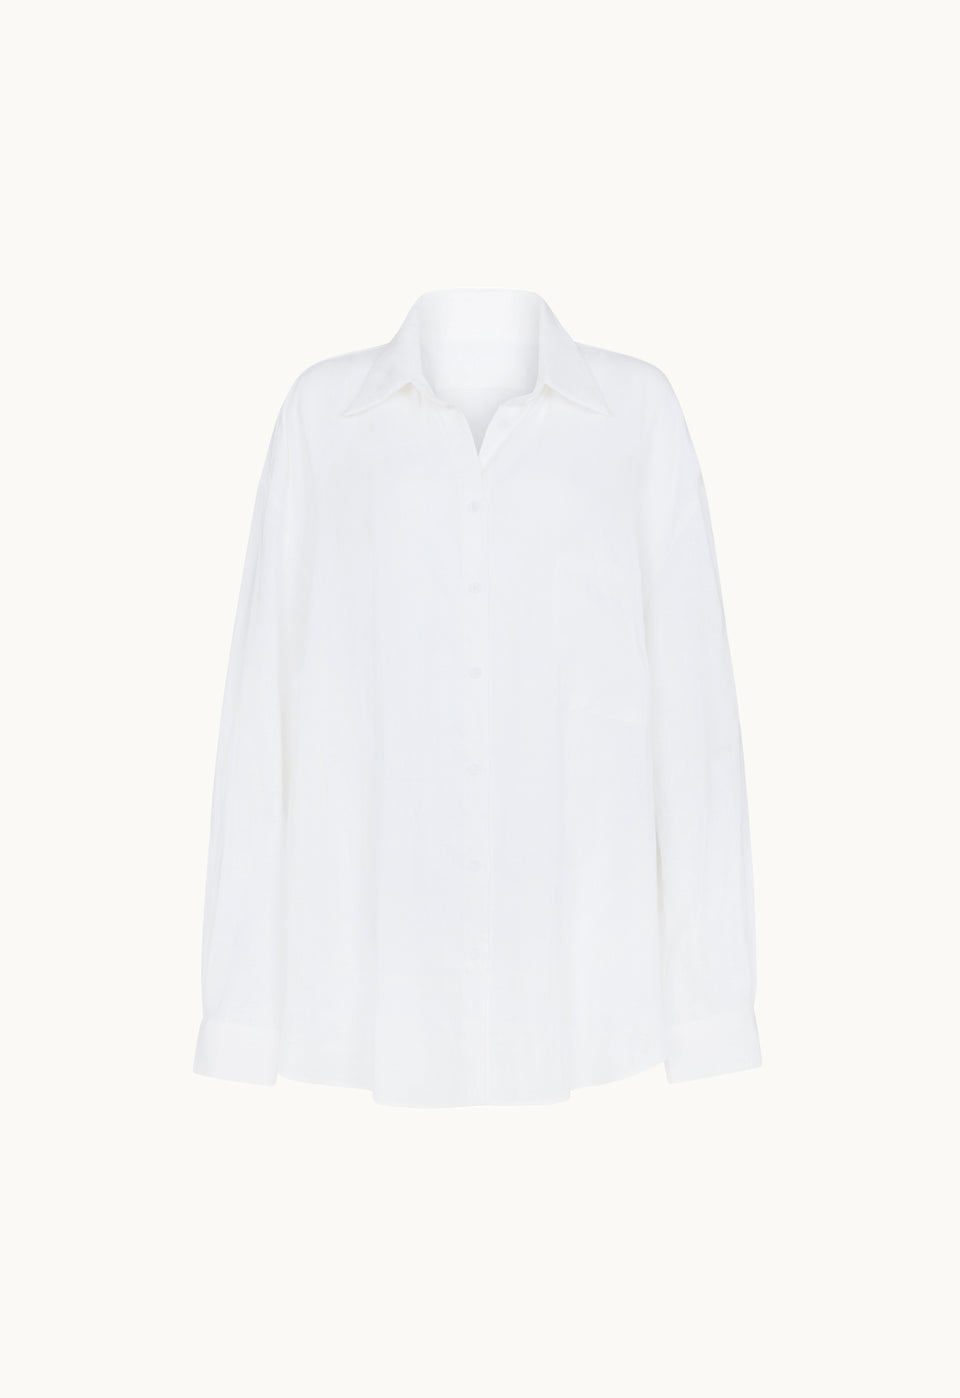 Linen Woven Shirt in White